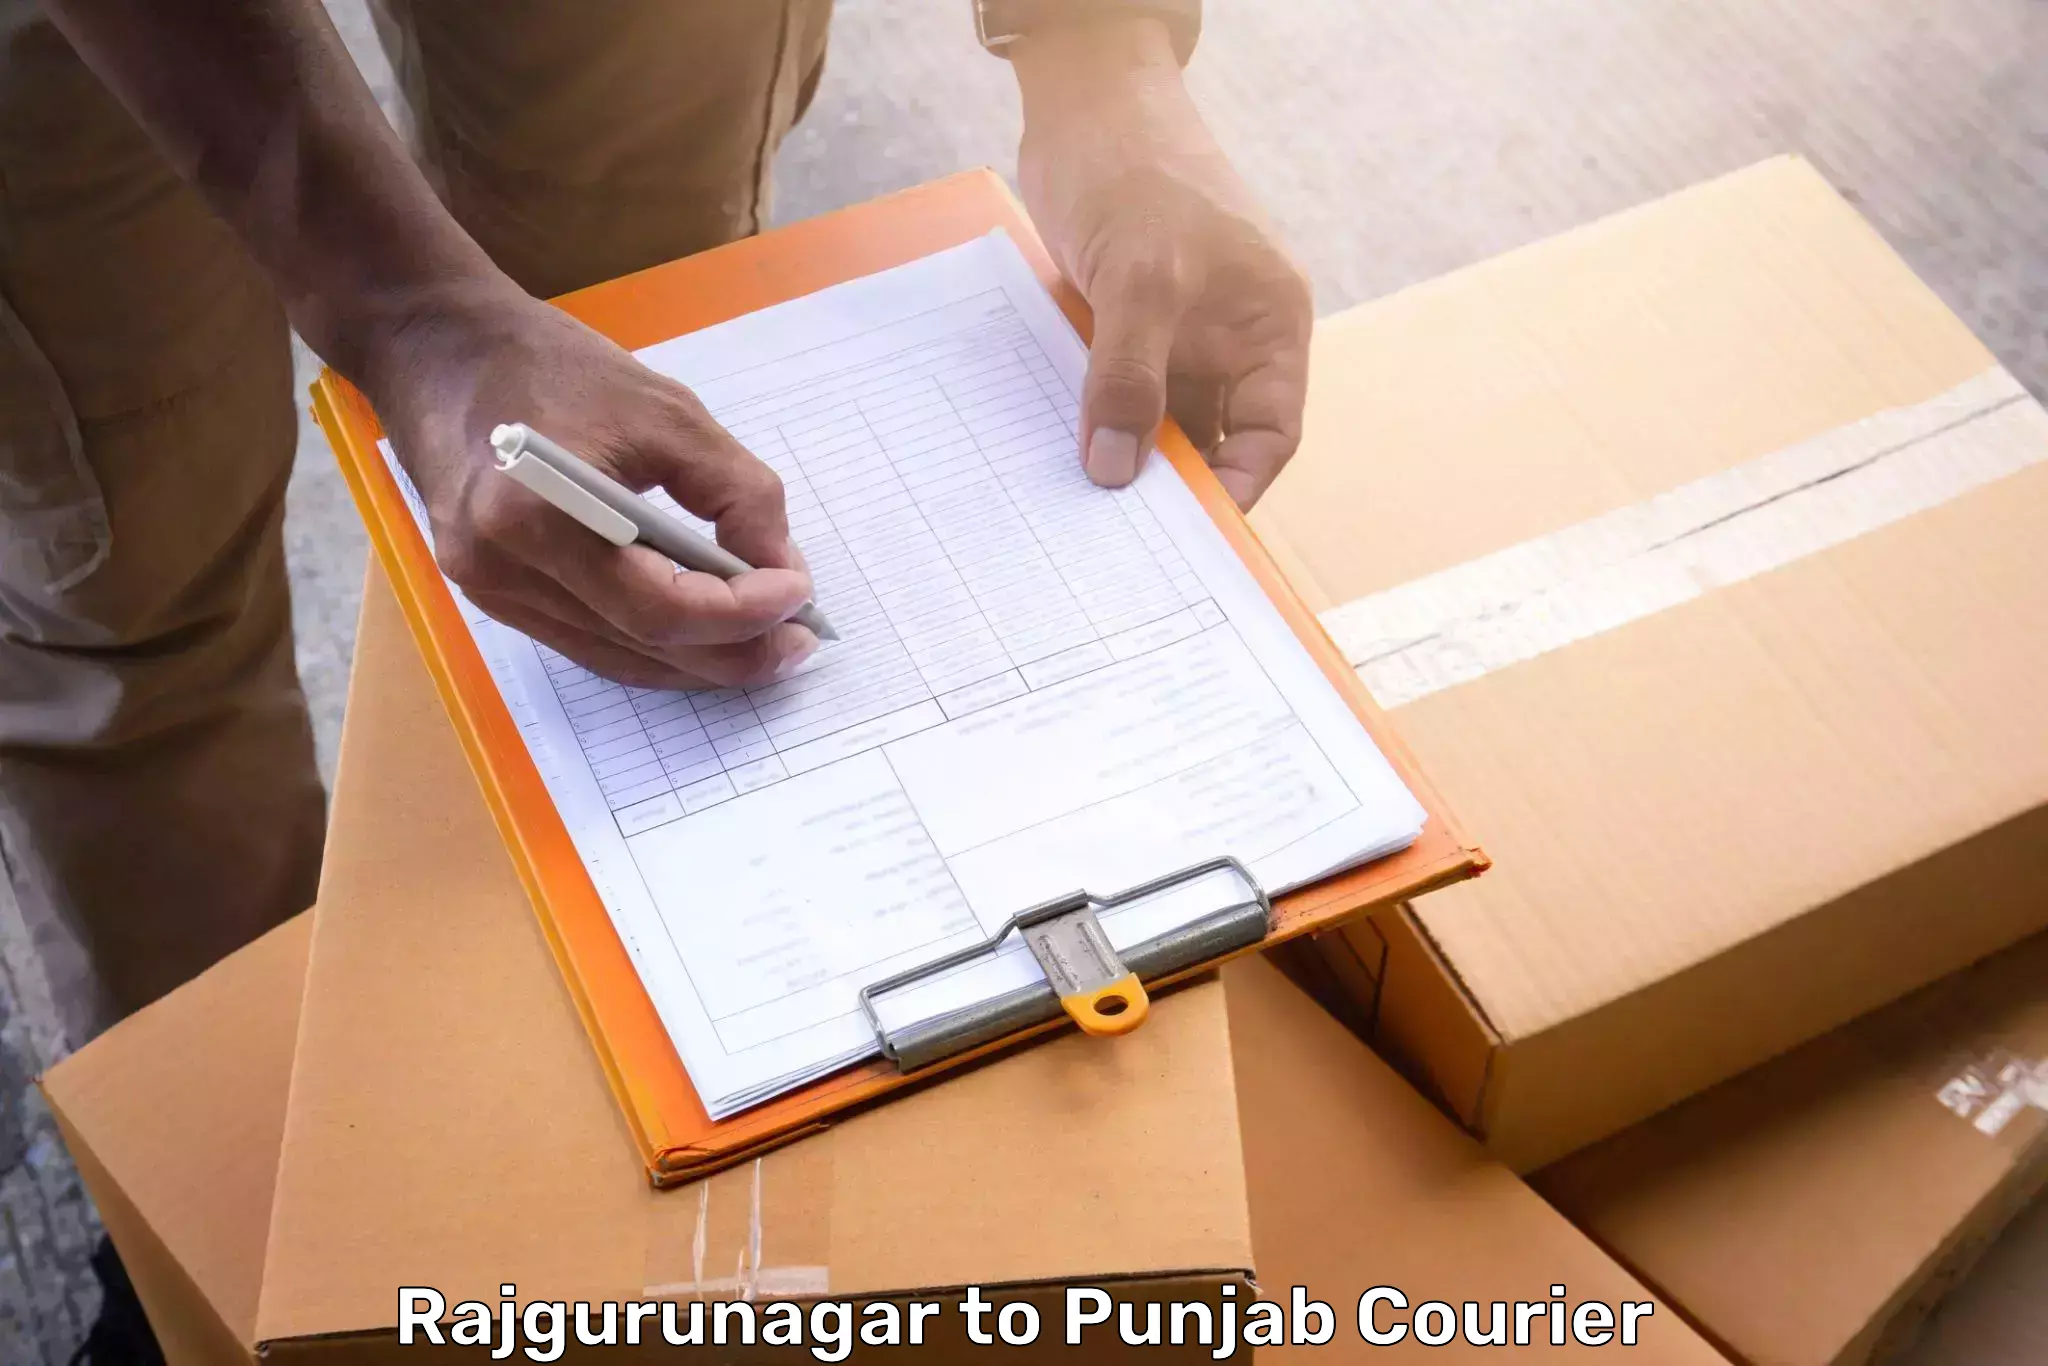 Luggage transport consultancy Rajgurunagar to Punjab